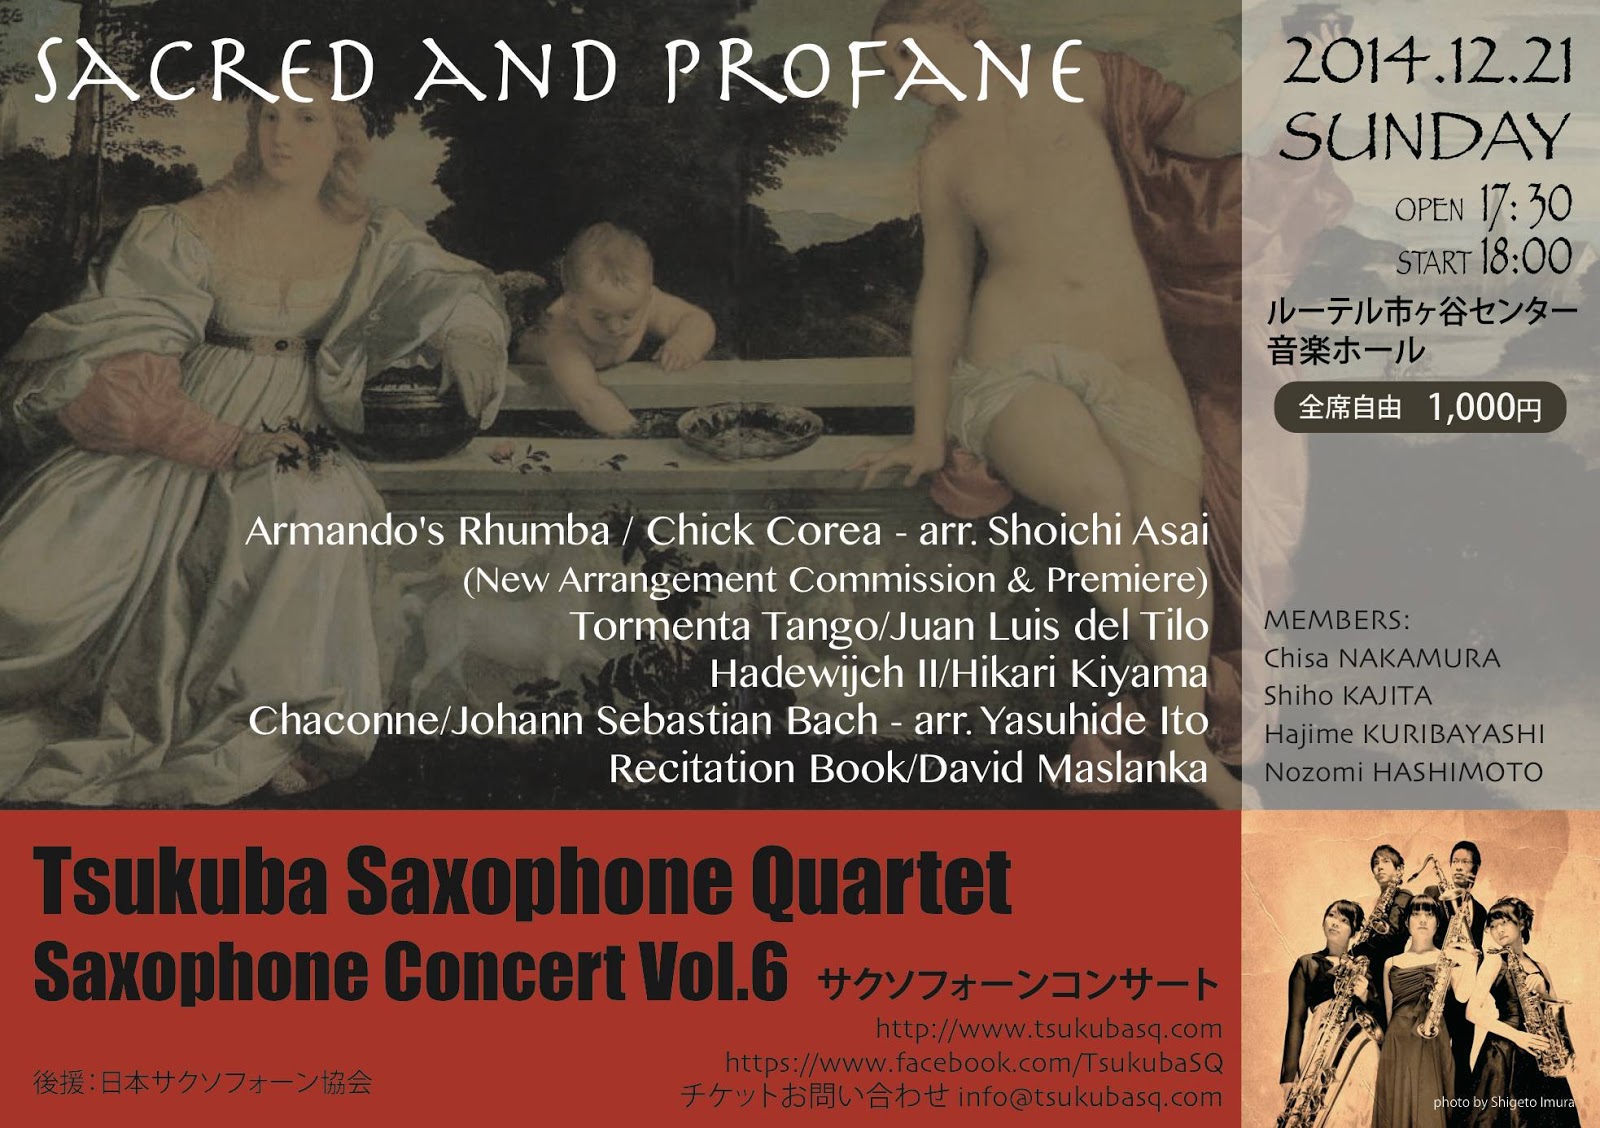 Tsukuba Saxophone Quartet – Saxophone Concert Vol.6